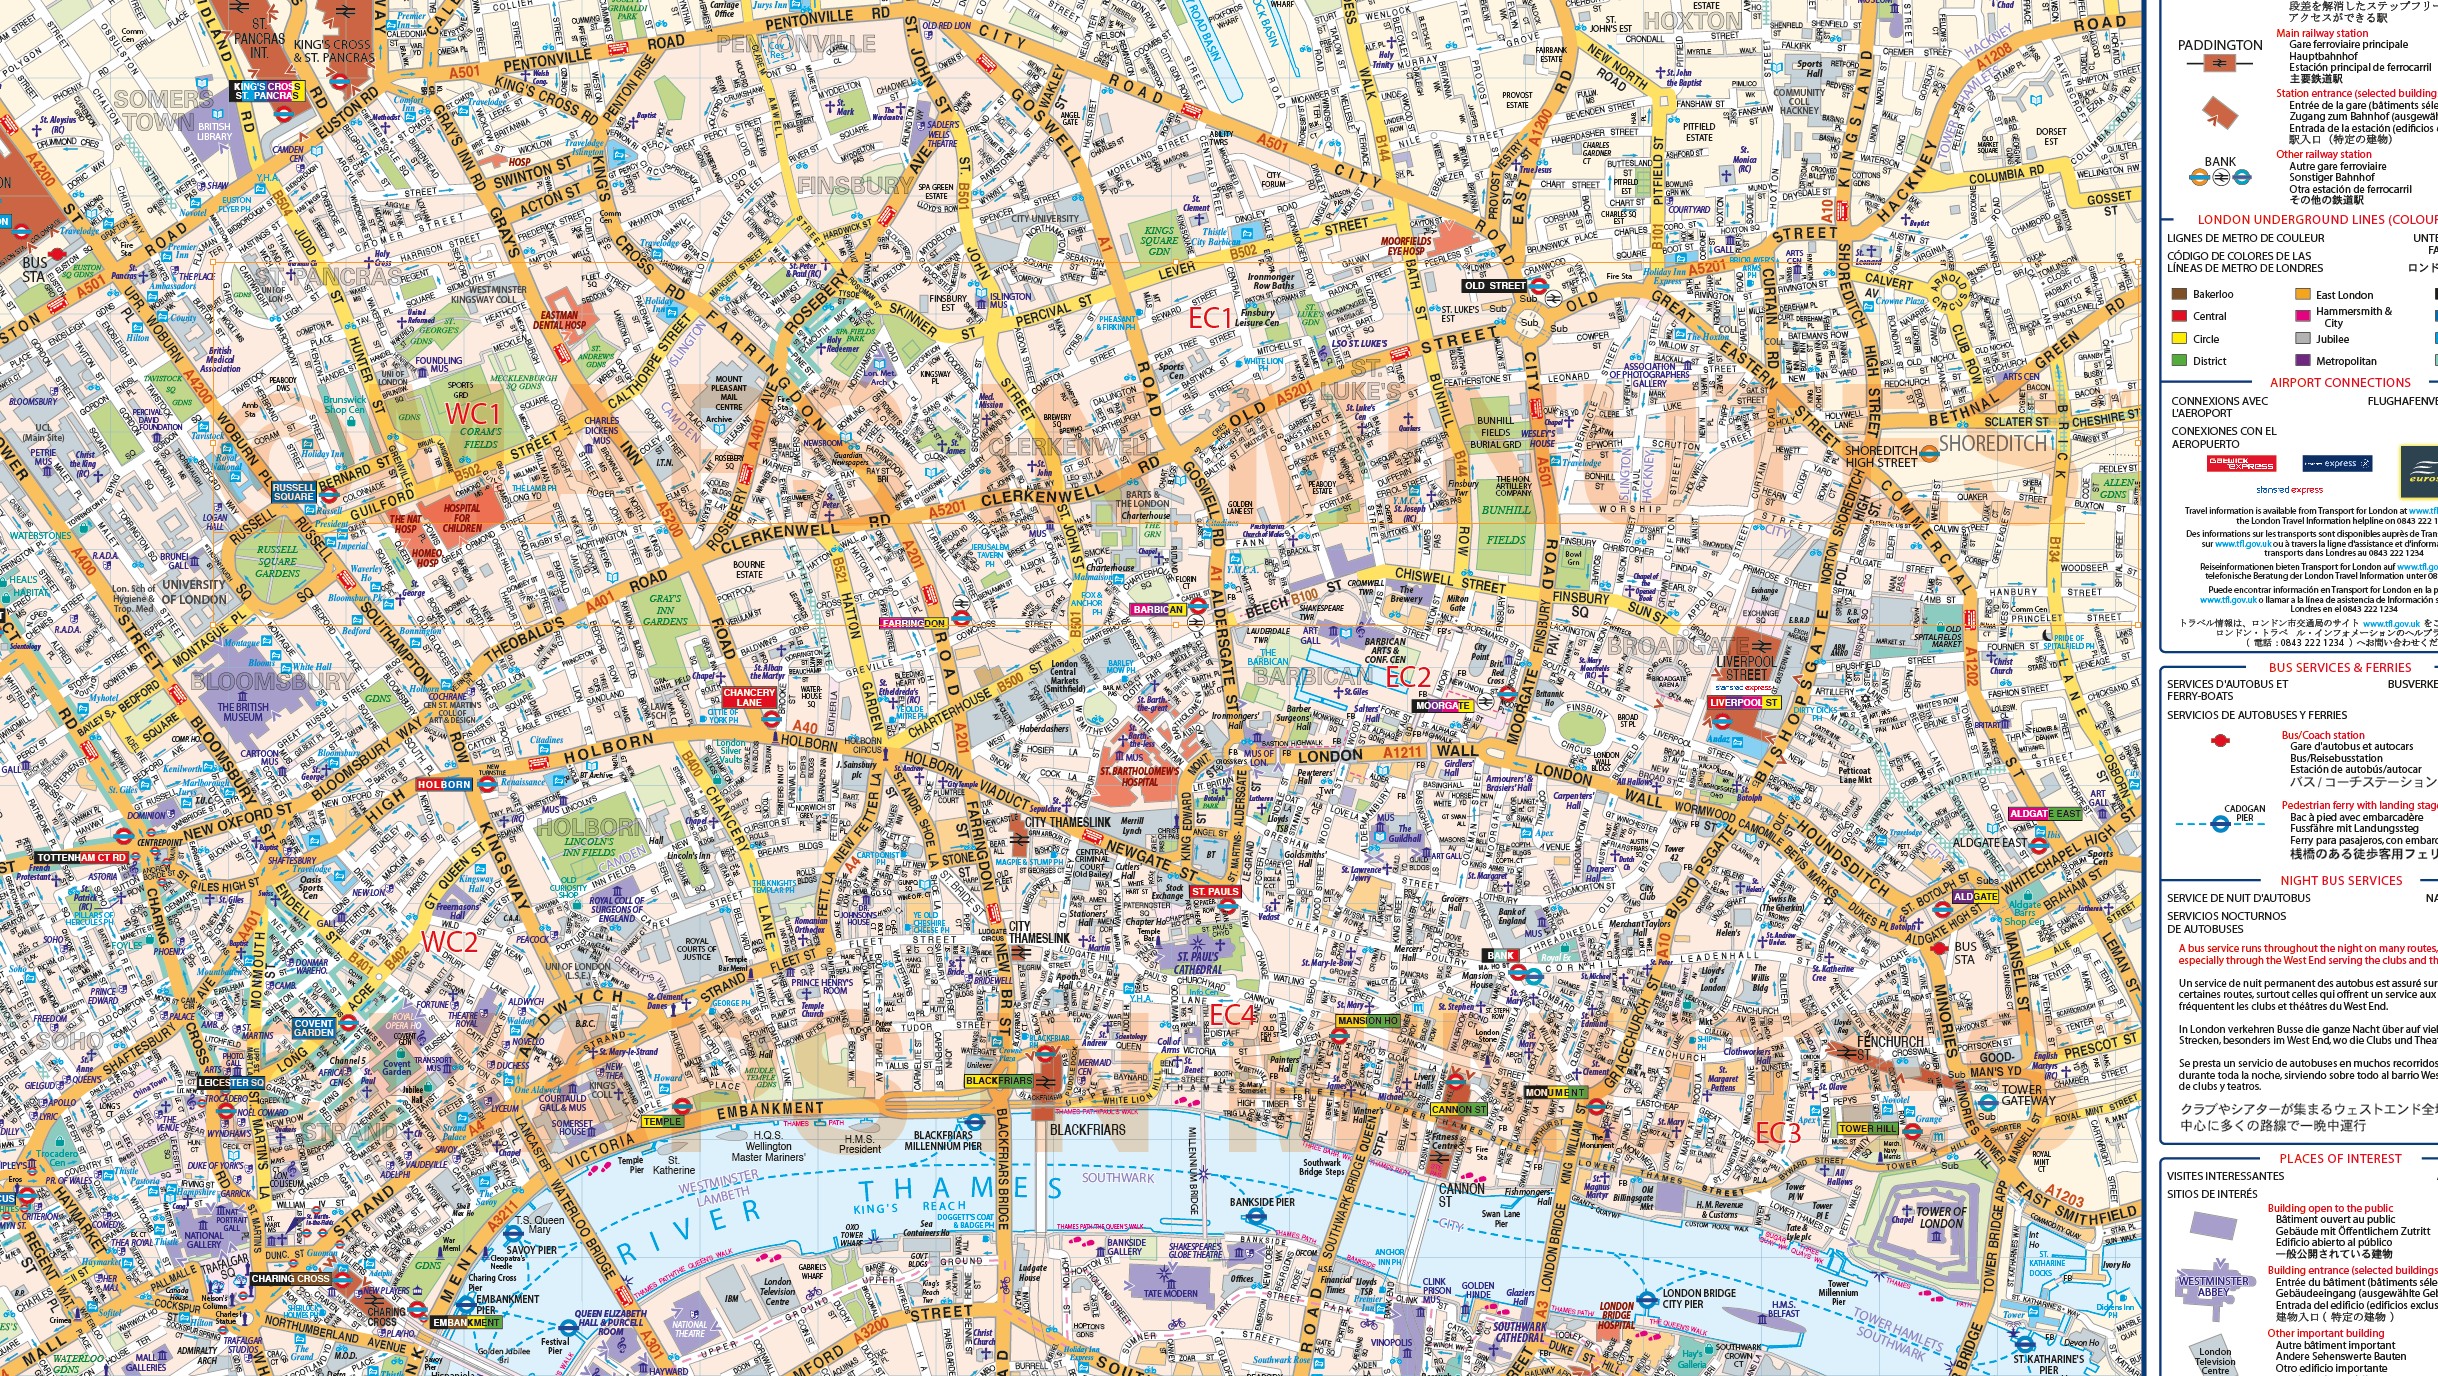 vinyl central london street map large size 12m d x 167m w